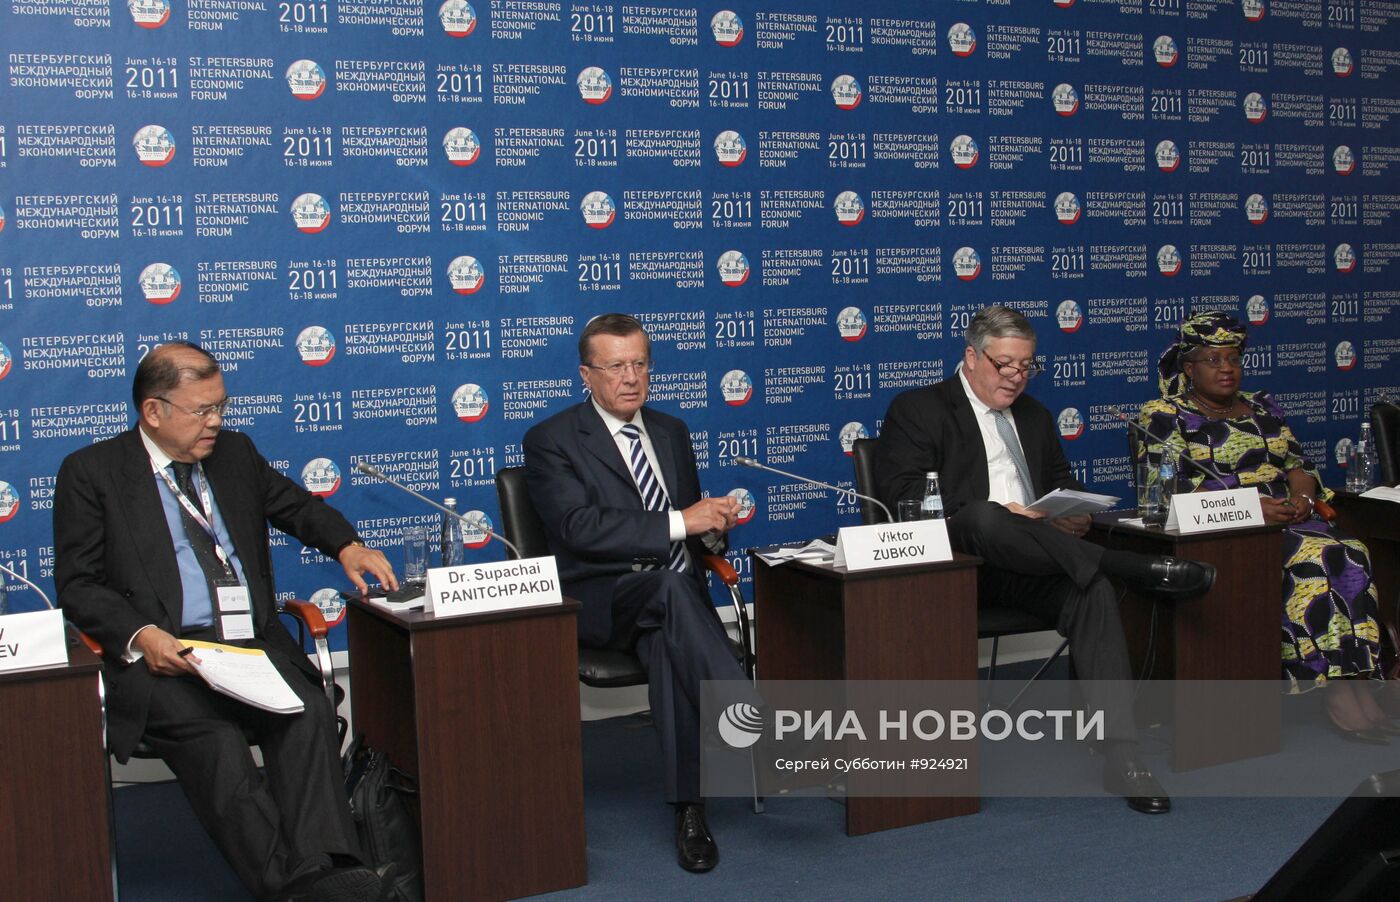 XV Петербургский международный экономический форум (ПМЭФ)